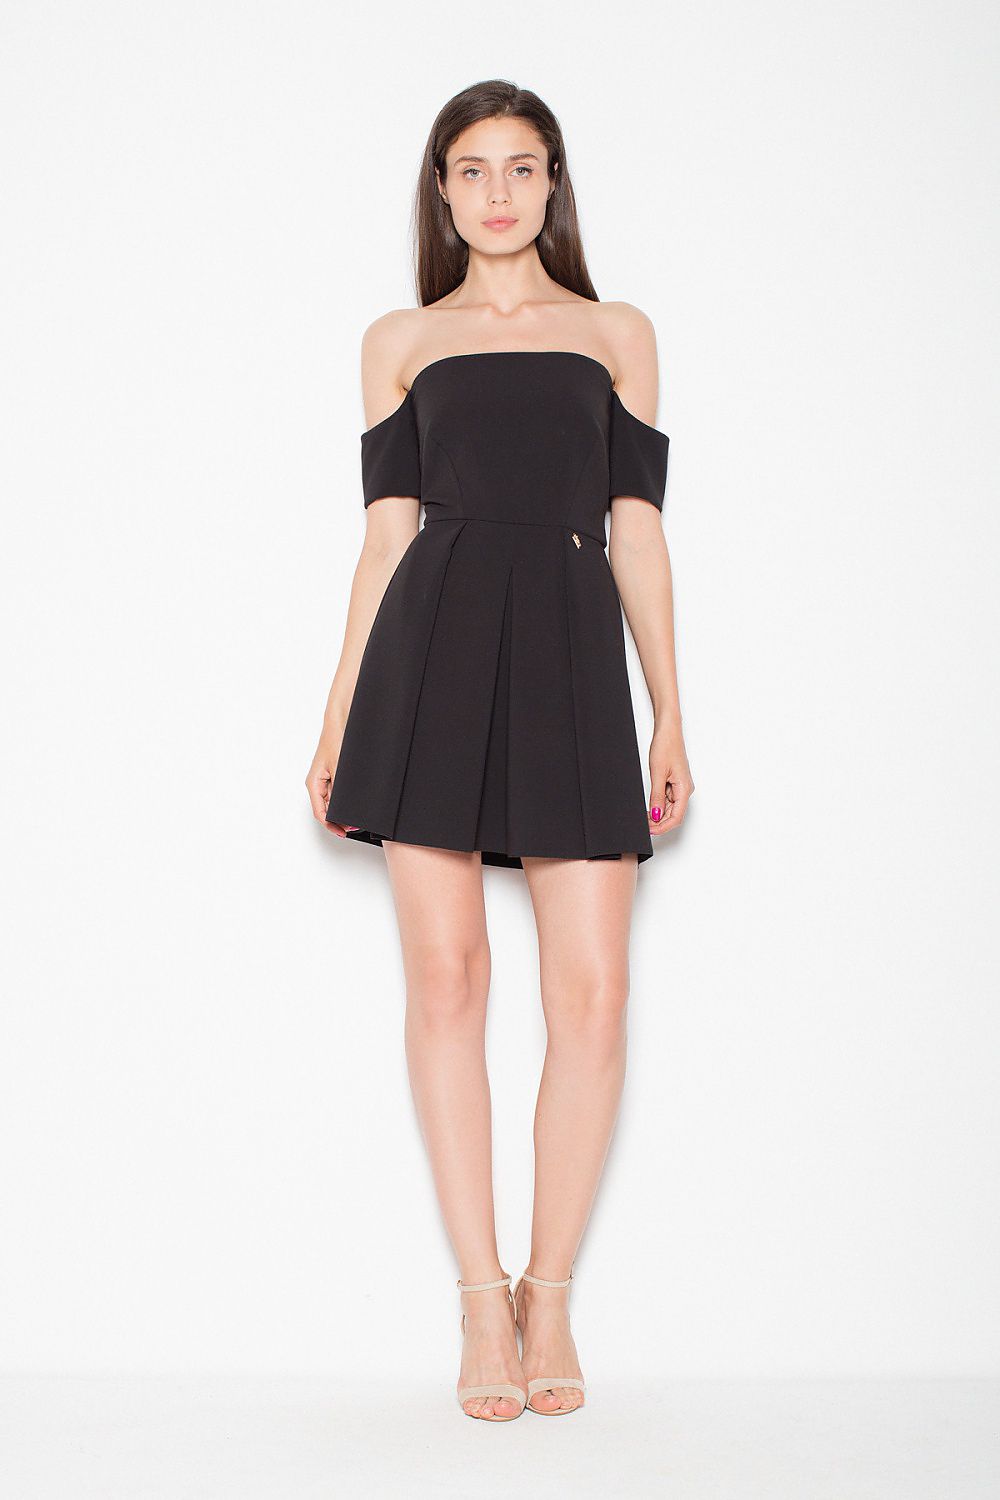 TEEK - Black Off-Shoulder Evening Dress DRESS TEEK M L  